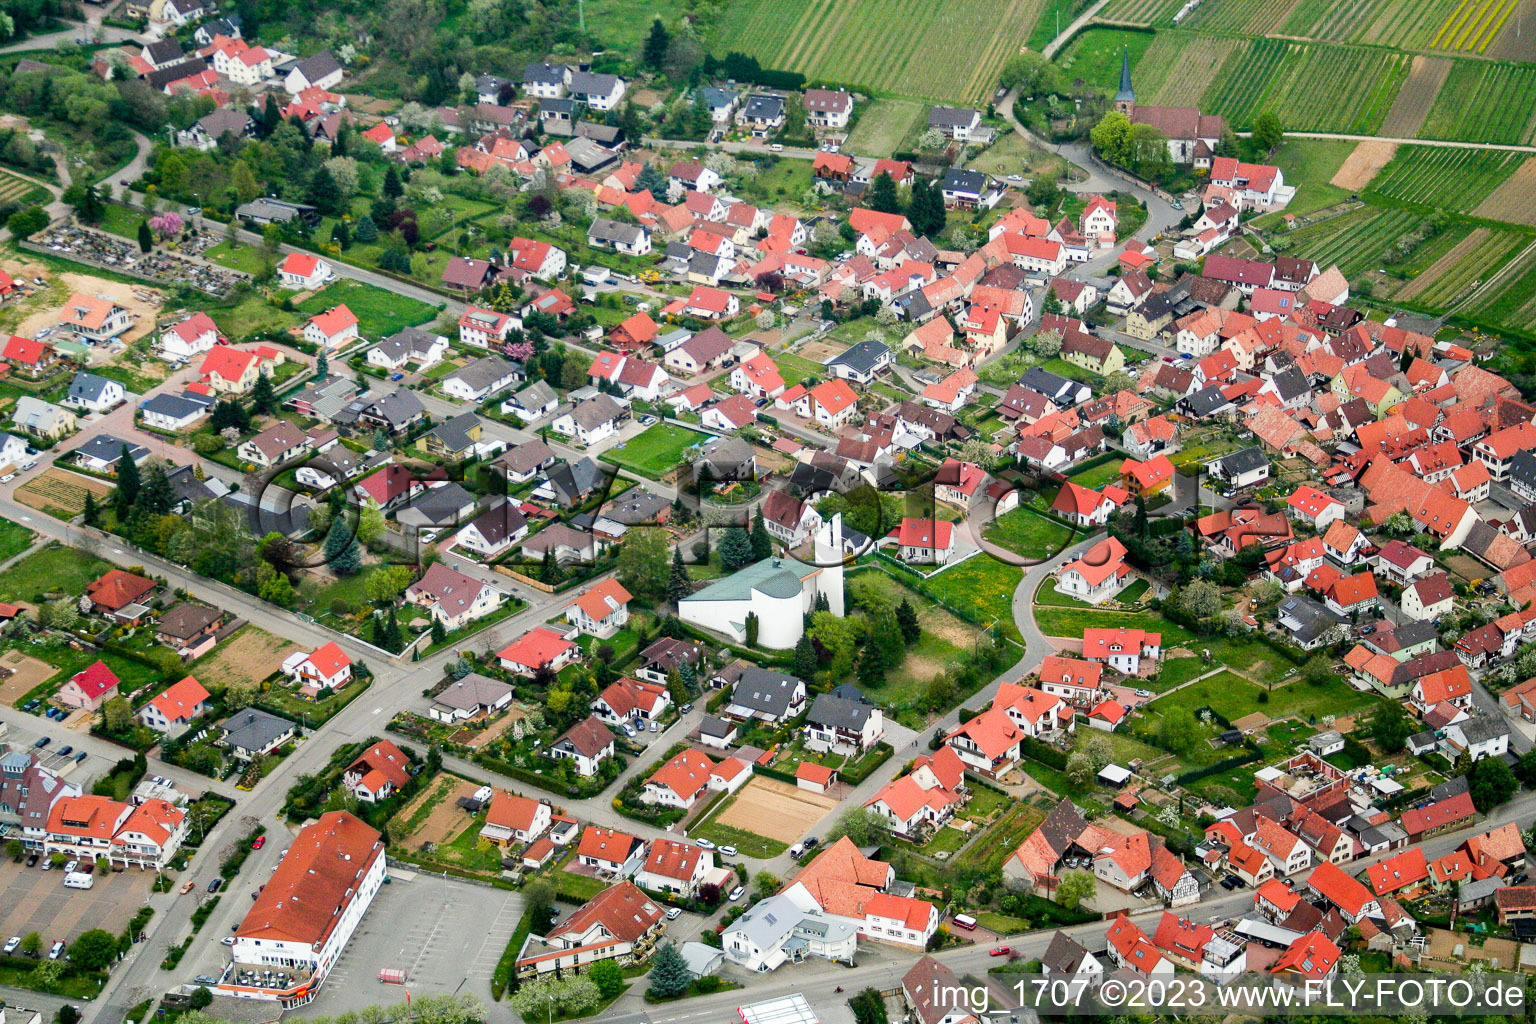 Aerial view of District Rechtenbach in Schweigen-Rechtenbach in the state Rhineland-Palatinate, Germany